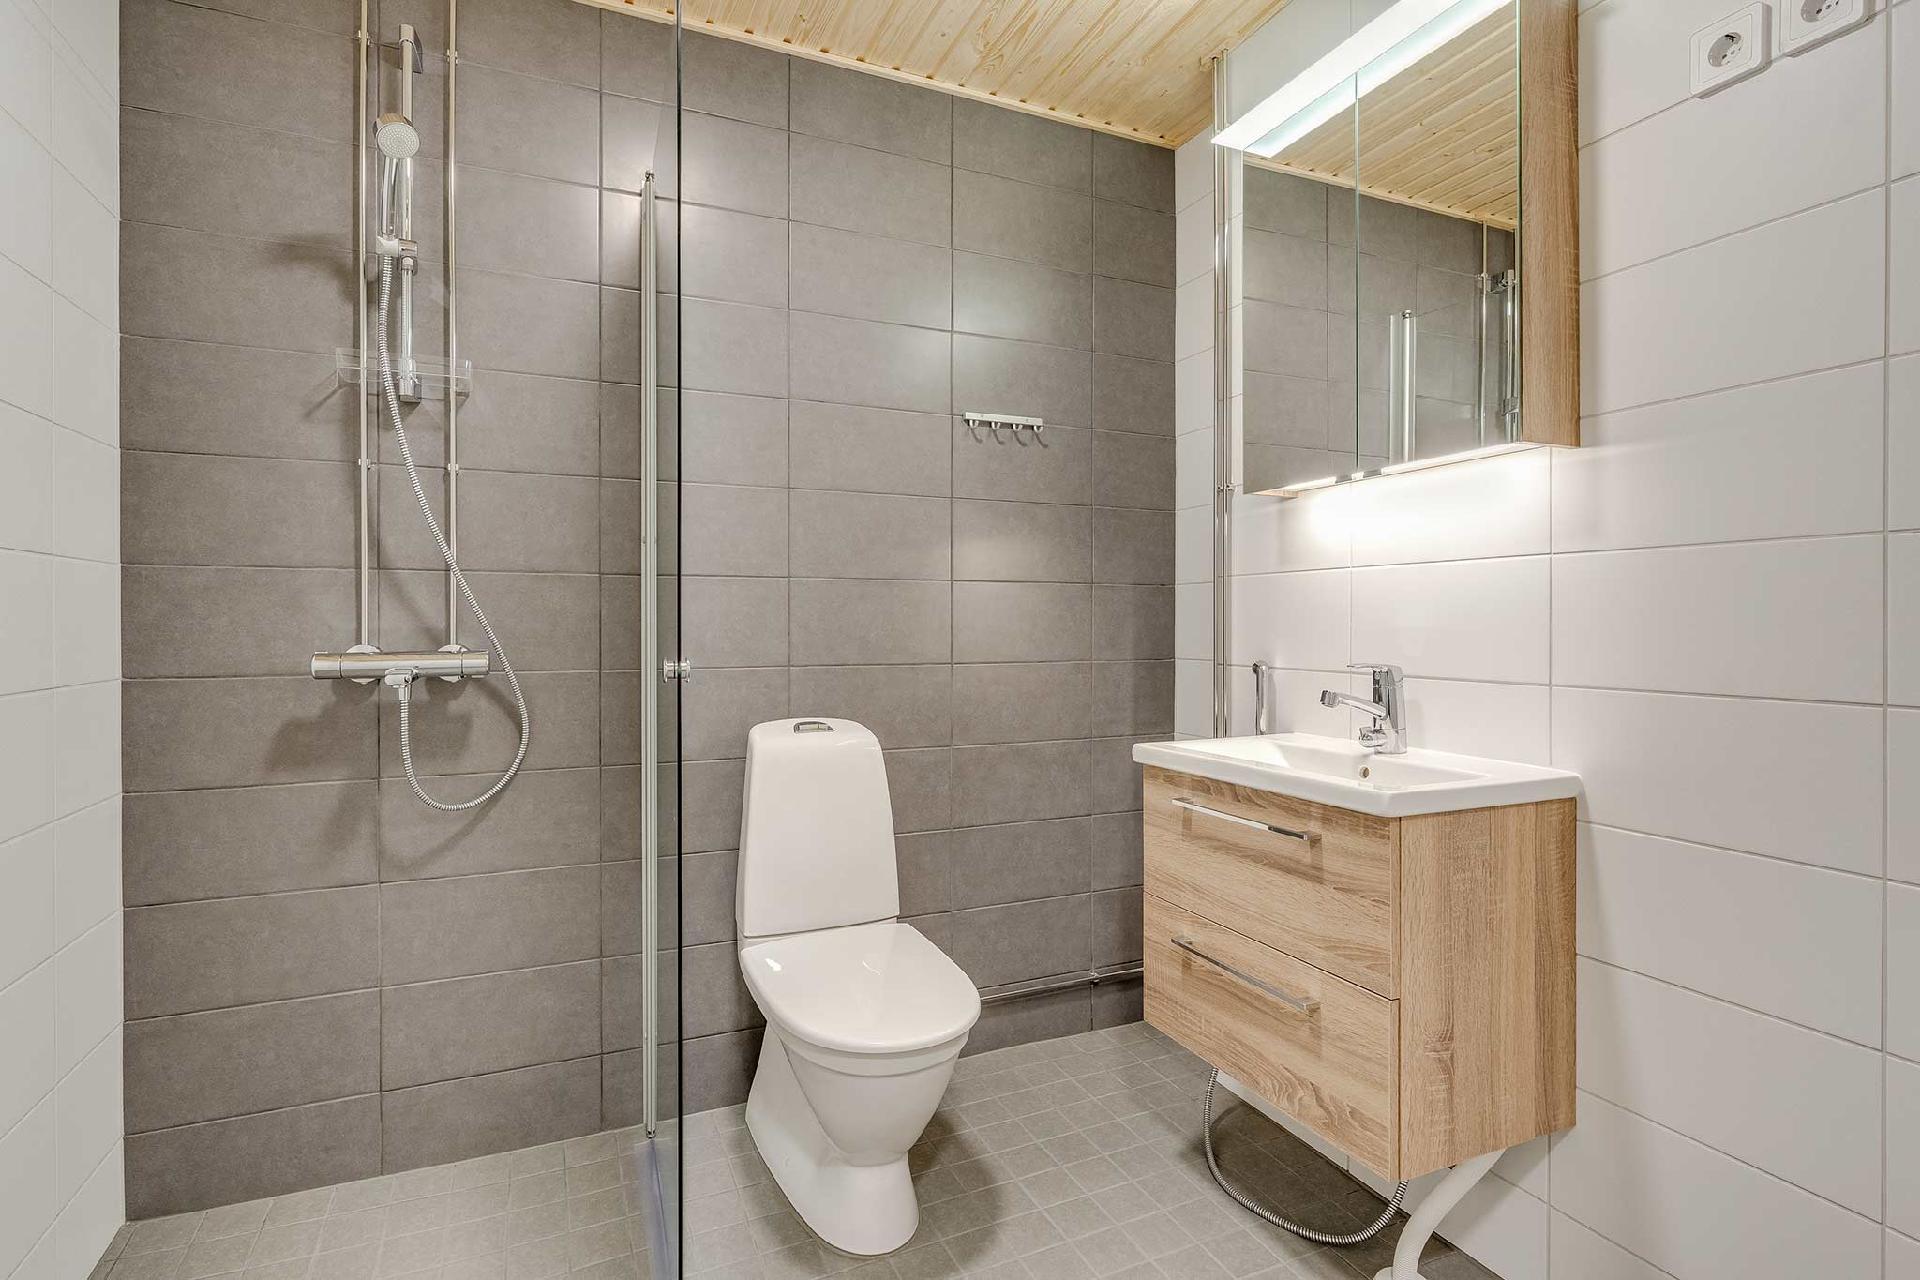 Kuva 60 m² asunnon B37 kylpyhuoneesta